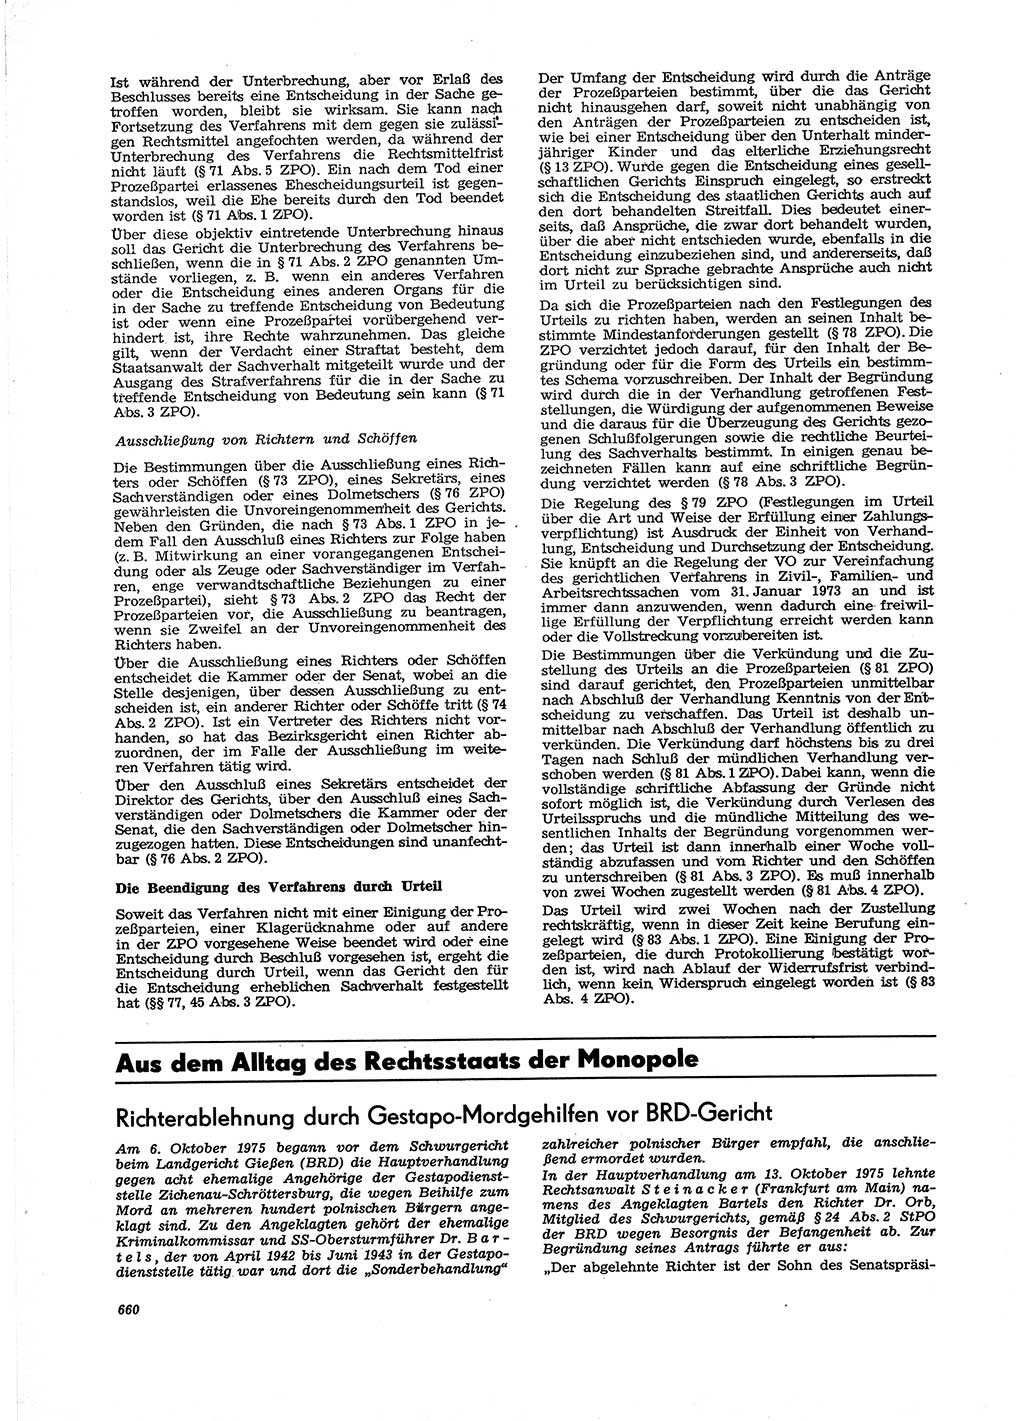 Neue Justiz (NJ), Zeitschrift für Recht und Rechtswissenschaft [Deutsche Demokratische Republik (DDR)], 29. Jahrgang 1975, Seite 660 (NJ DDR 1975, S. 660)